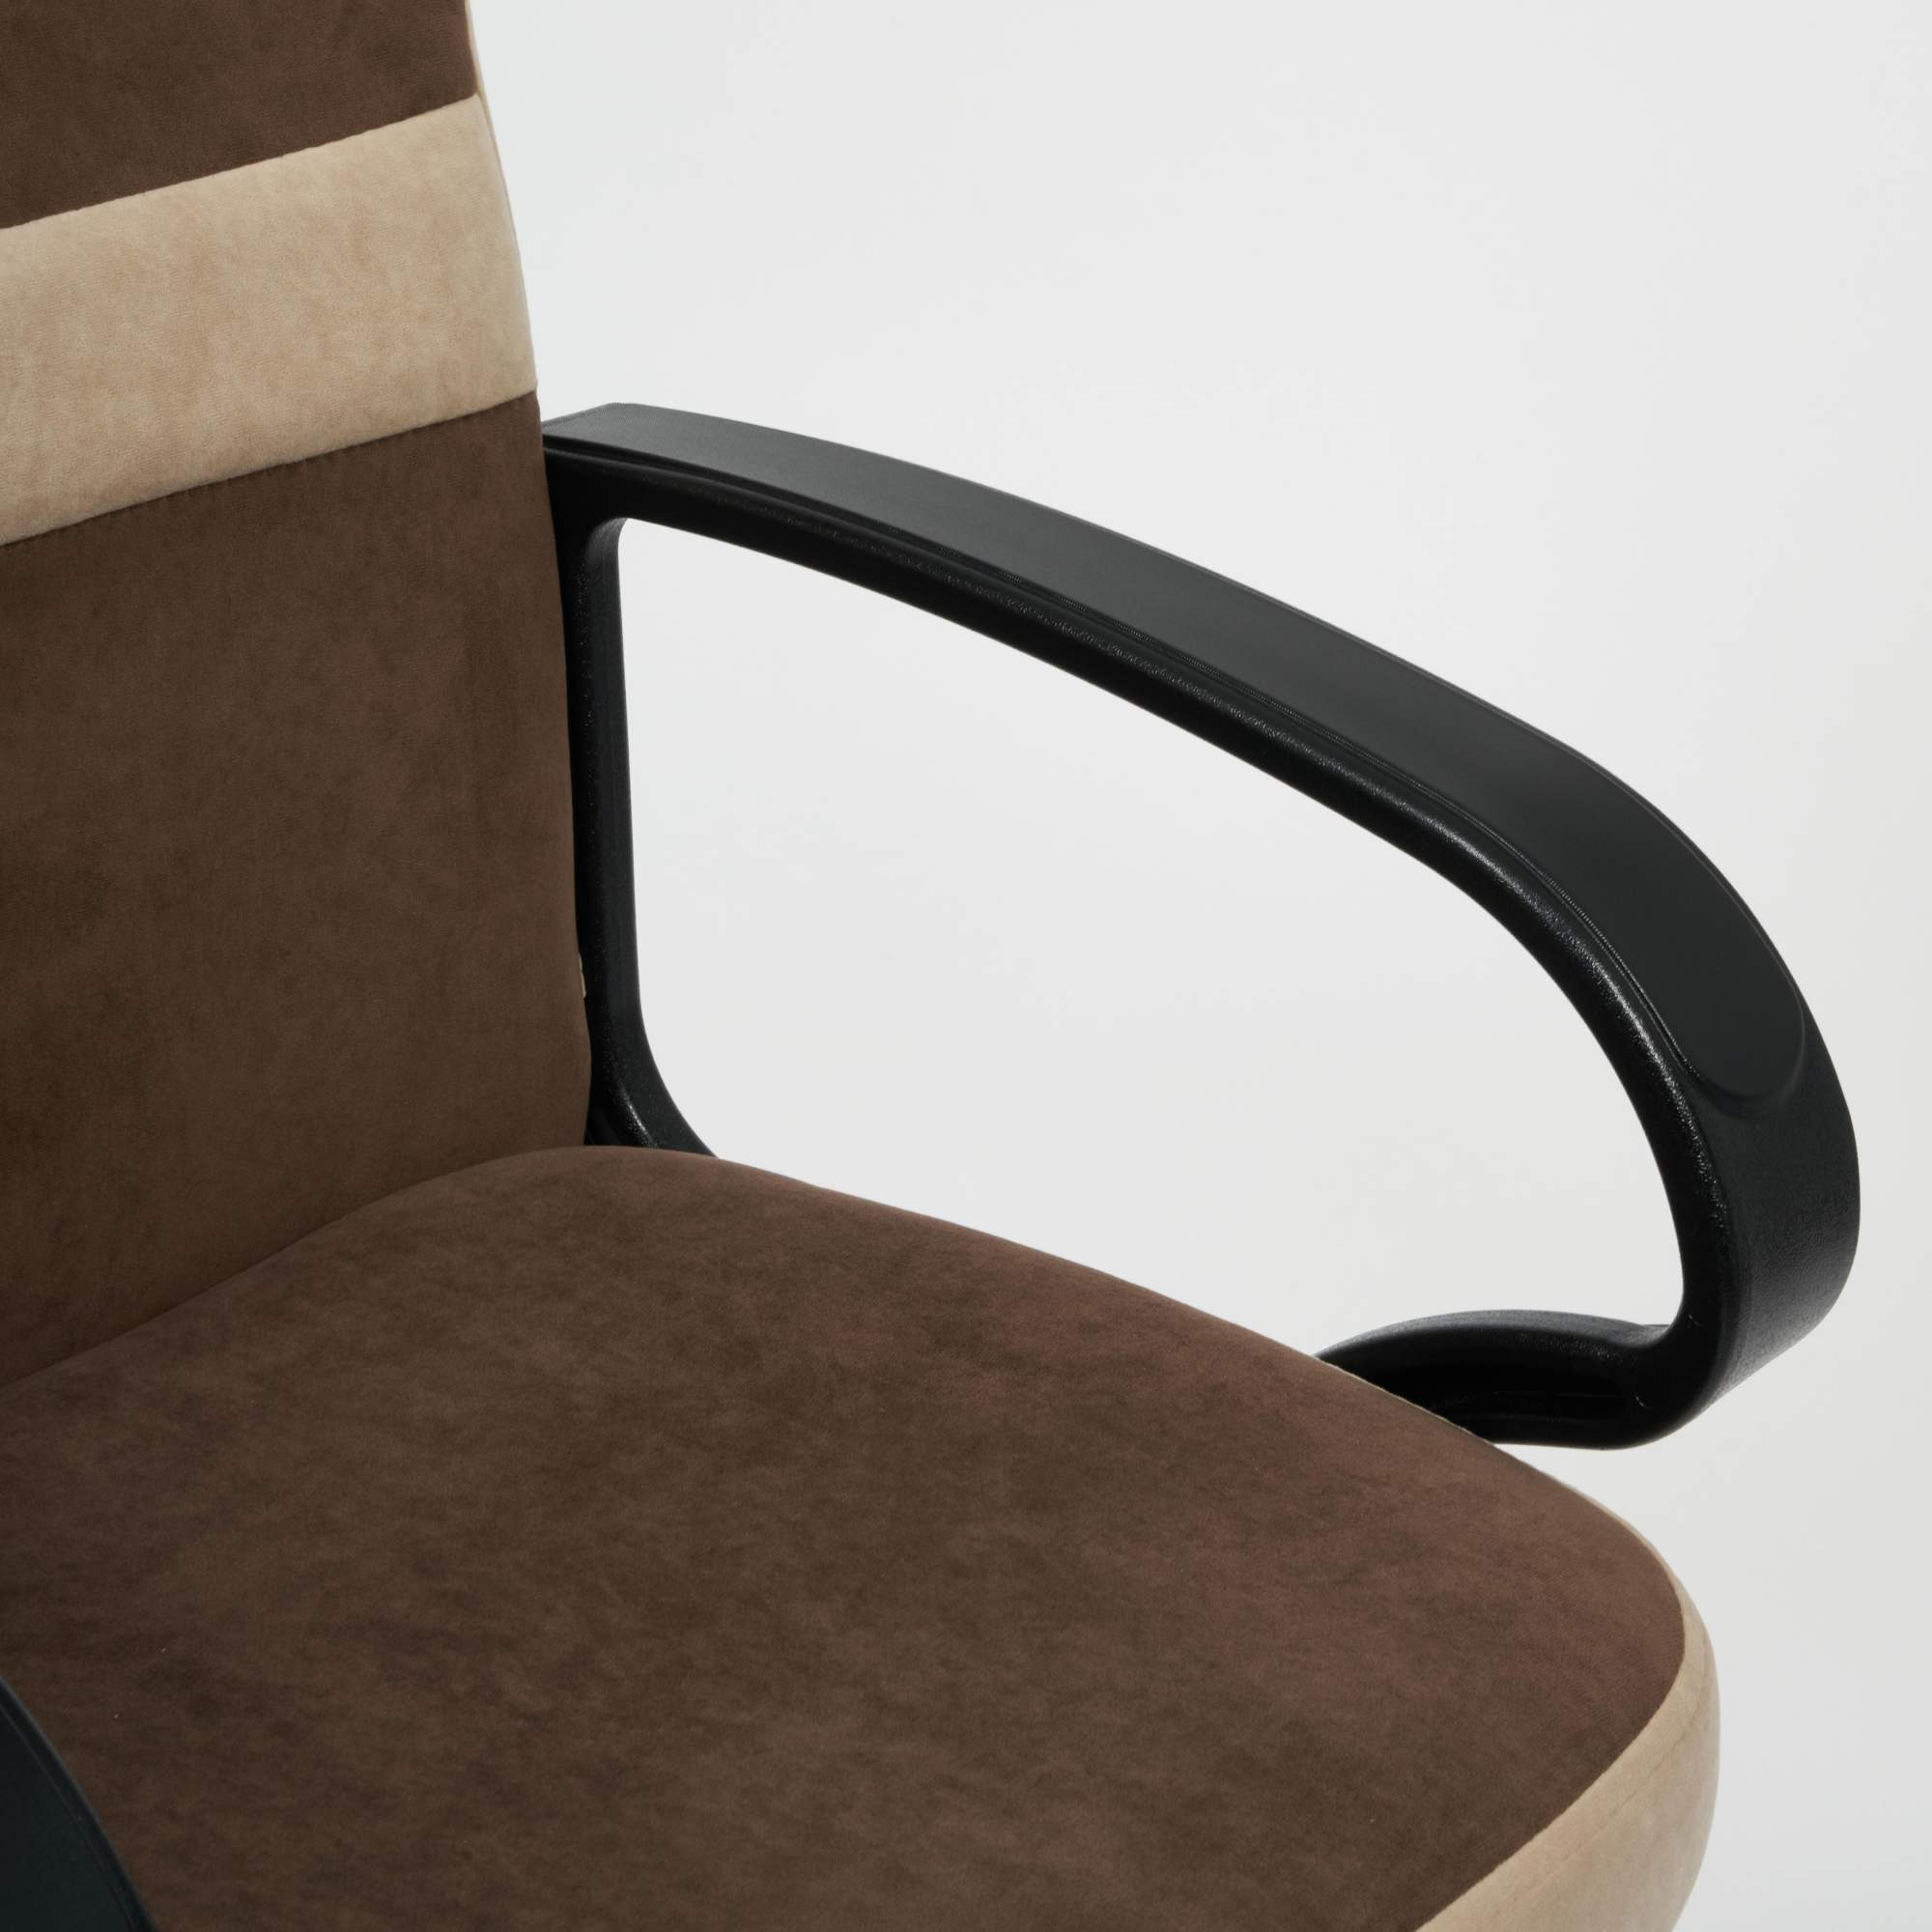 Кресло TetChair СН757 флок , коричневый/бежевый